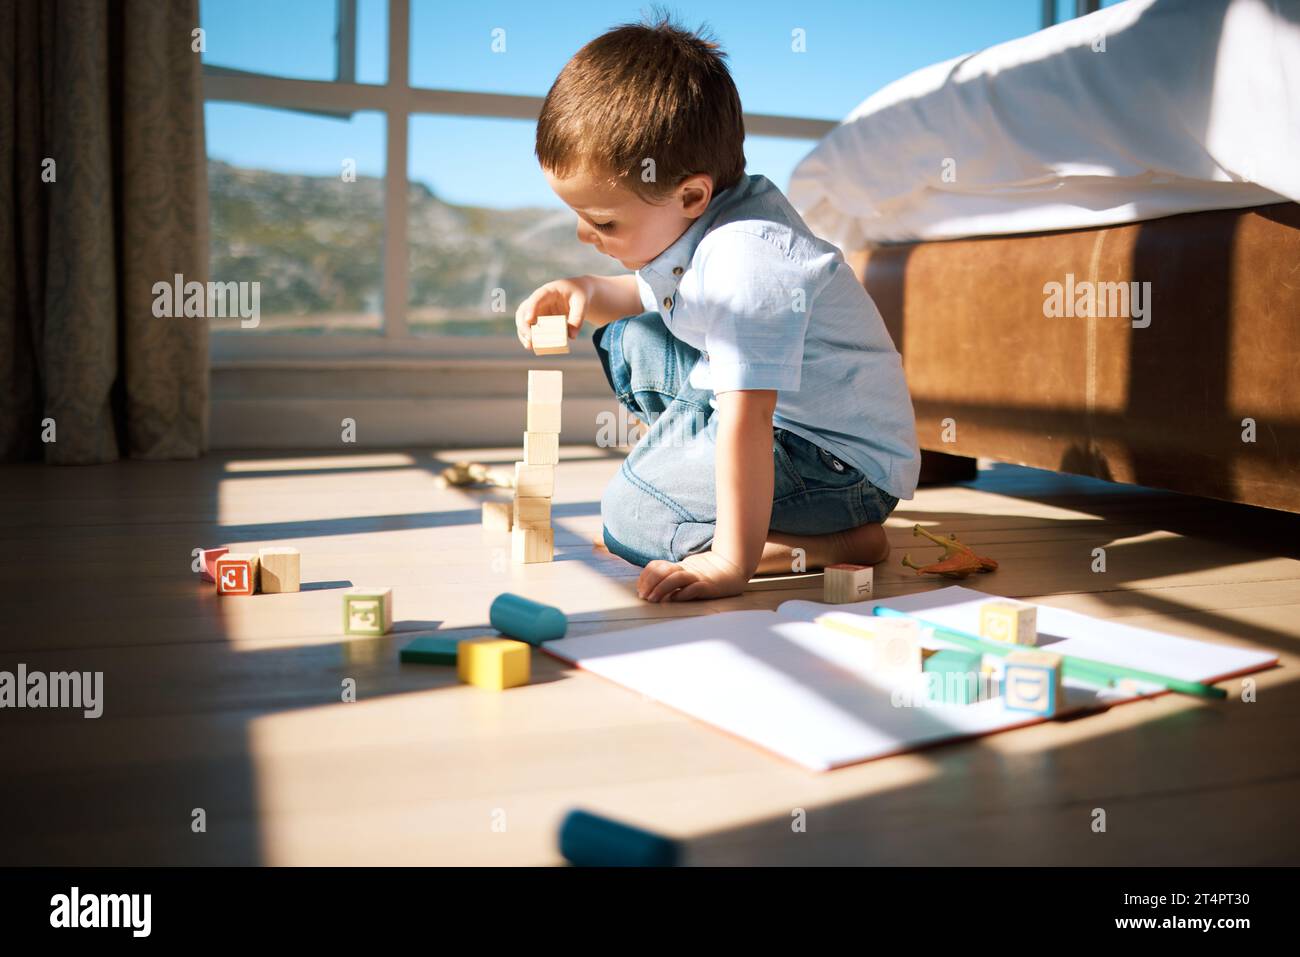 Un bambino che costruisce una torre con blocchi di legno. Adorabili giocattoli caucasici impilabili per bambini, sviluppando abilità motorie fini e coordinazione occhio-mano Foto Stock